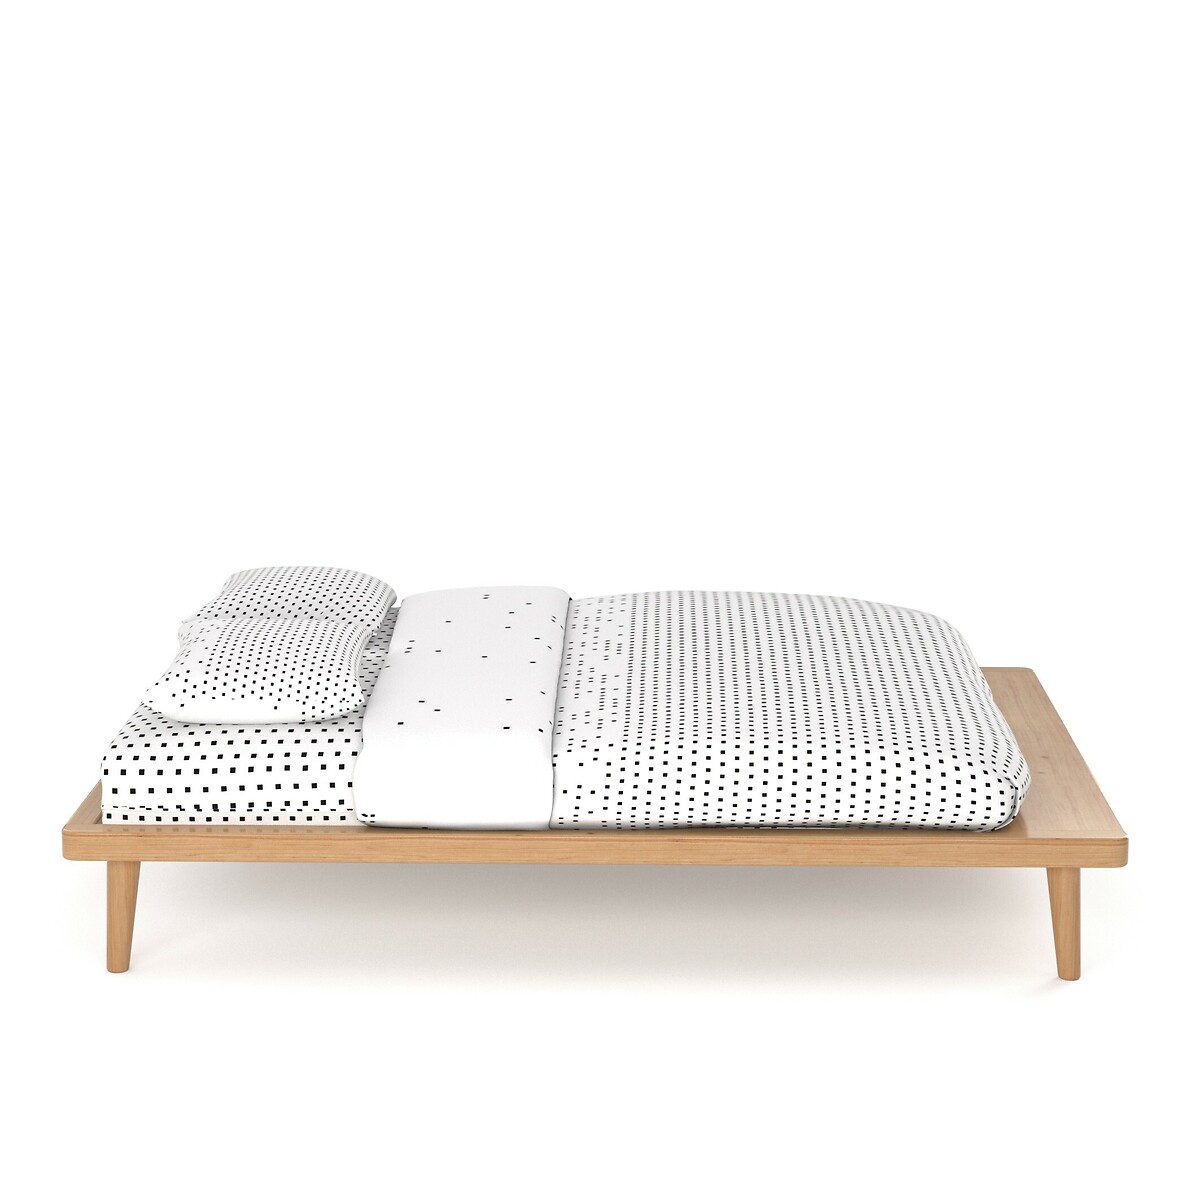 Кровать La Redoute С платформой из массива сосны  кроватное основание Jimi 160 x 200 см каштановый, размер 160 x 200 см - фото 3